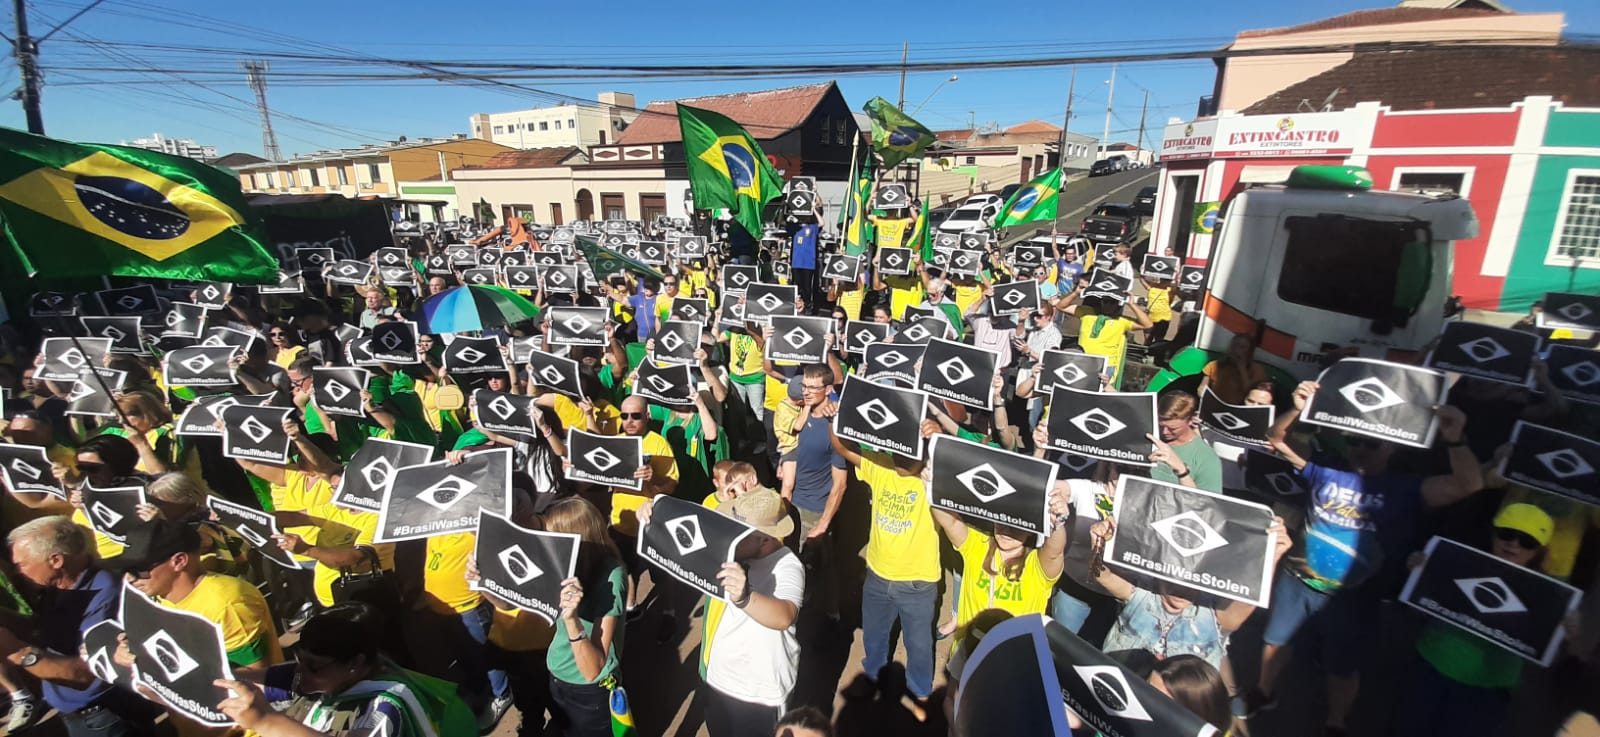 (ASSISTA AOS VÍDEOS) Castro e Ponta Grossa dão exemplo nas manifestações neste 15 de Novembro